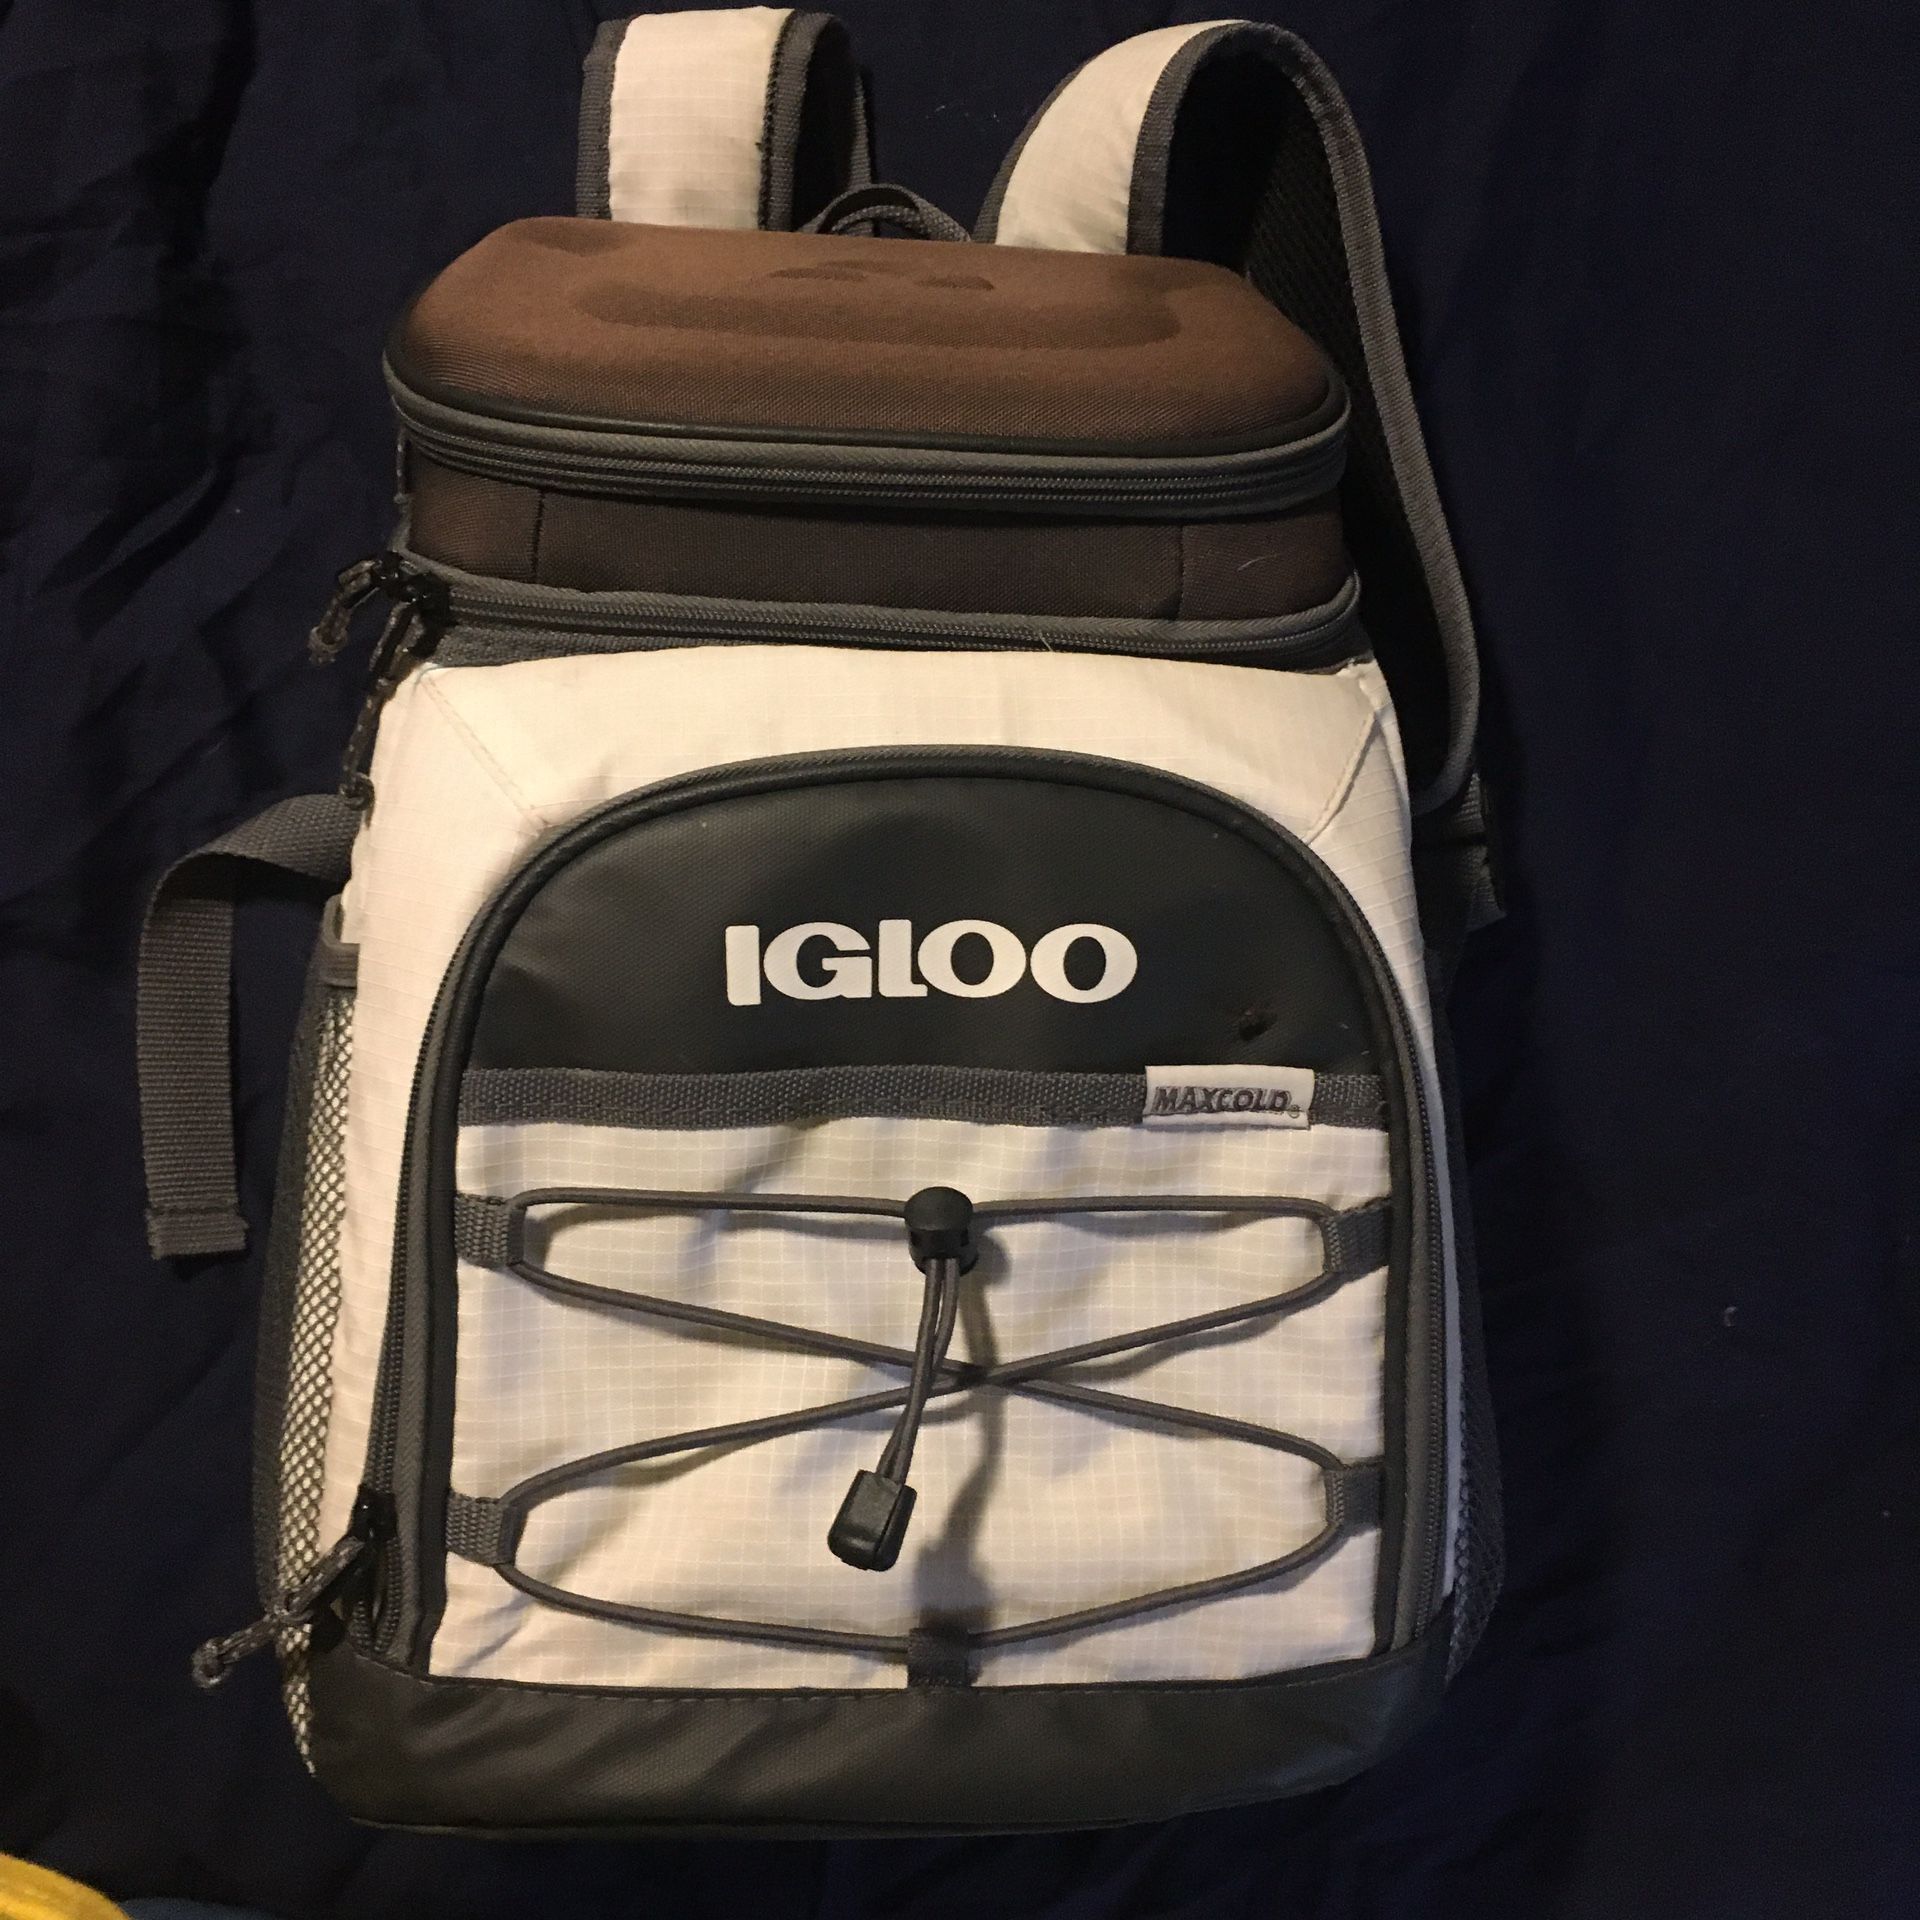 IGLOO backpack cooler